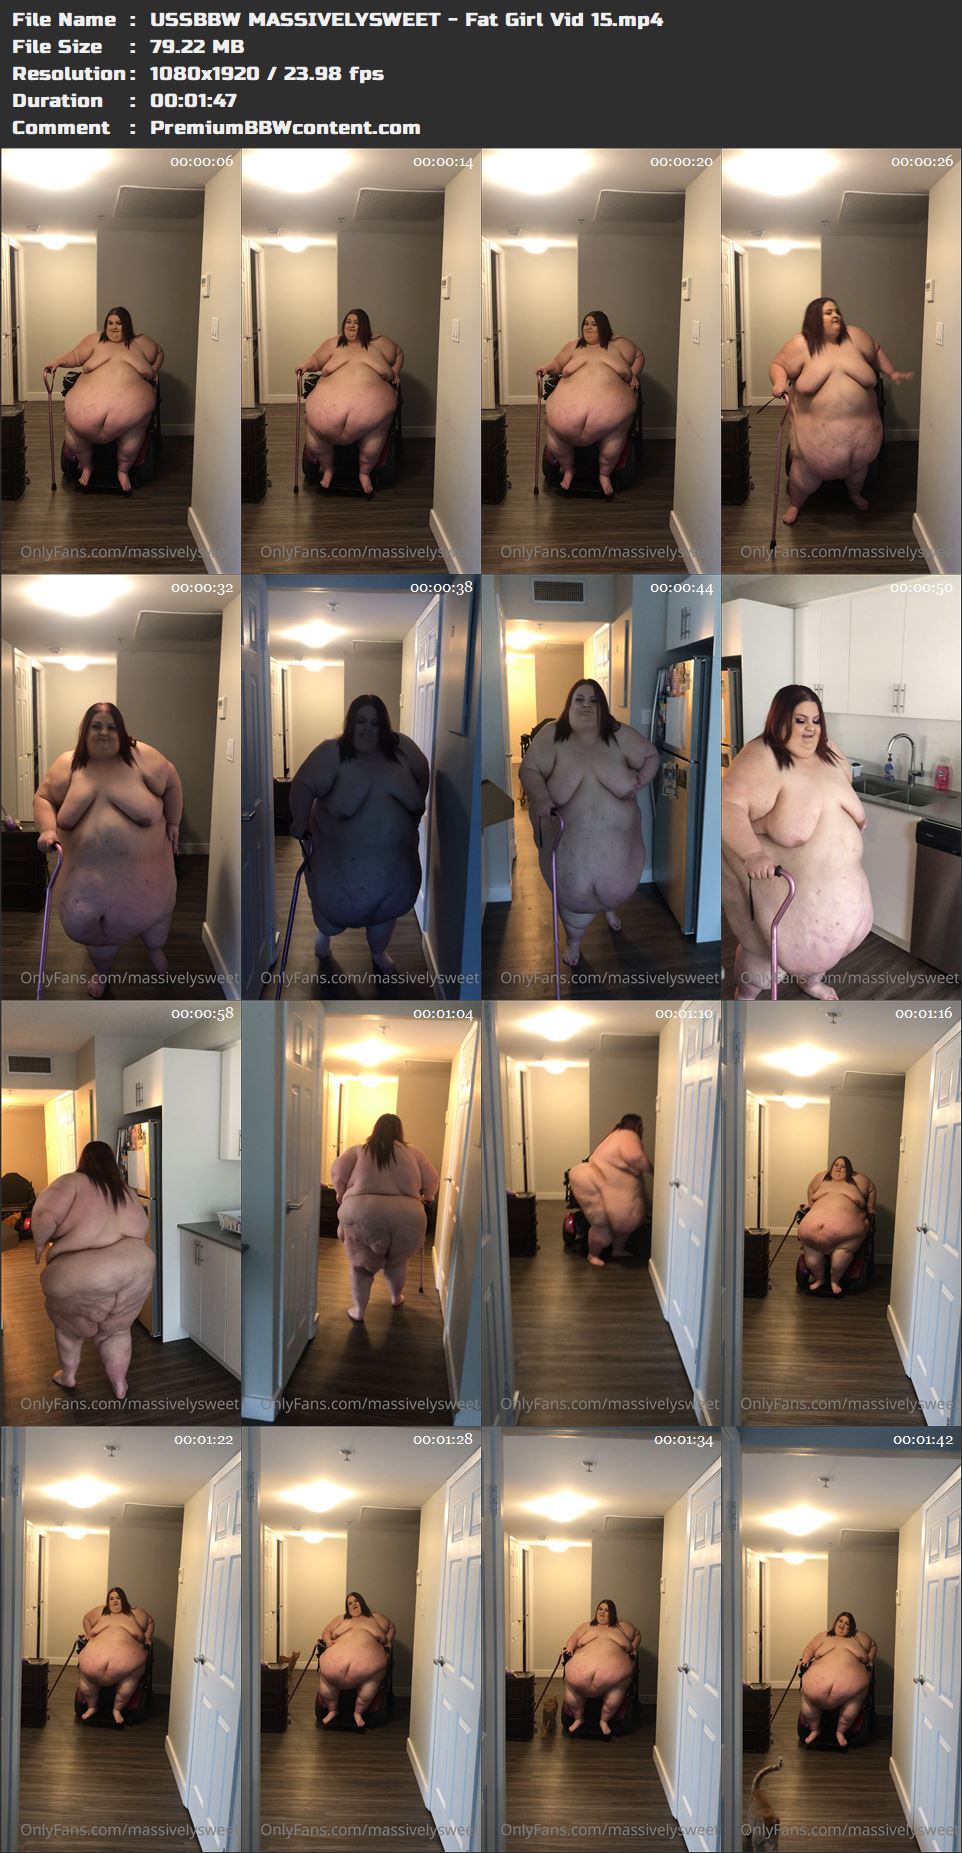 USSBBW MASSIVELYSWEET - Fat Girl Vid 15 thumbnails